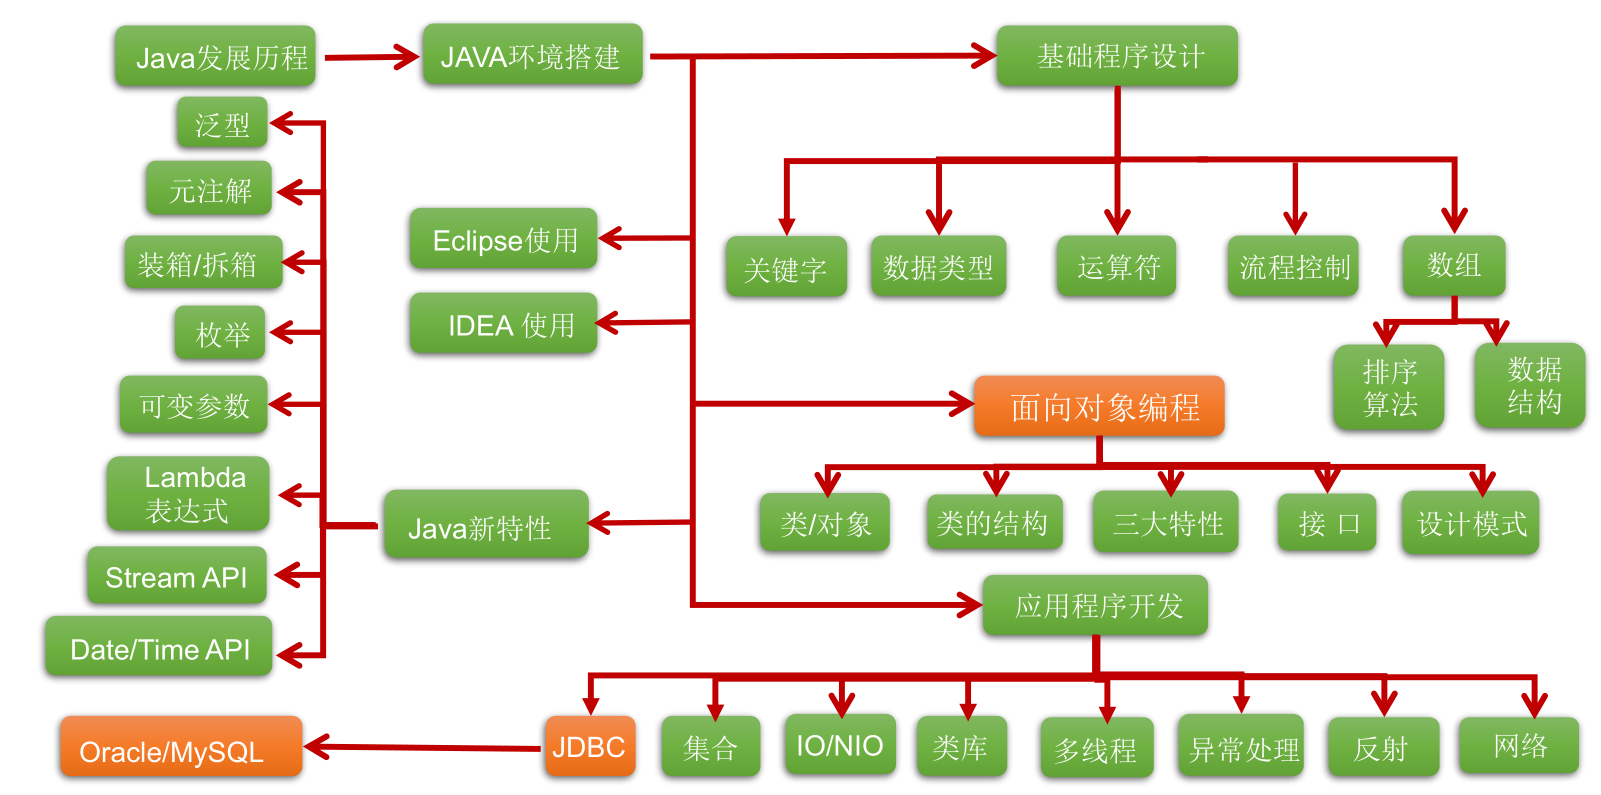 1. Java 语言概述